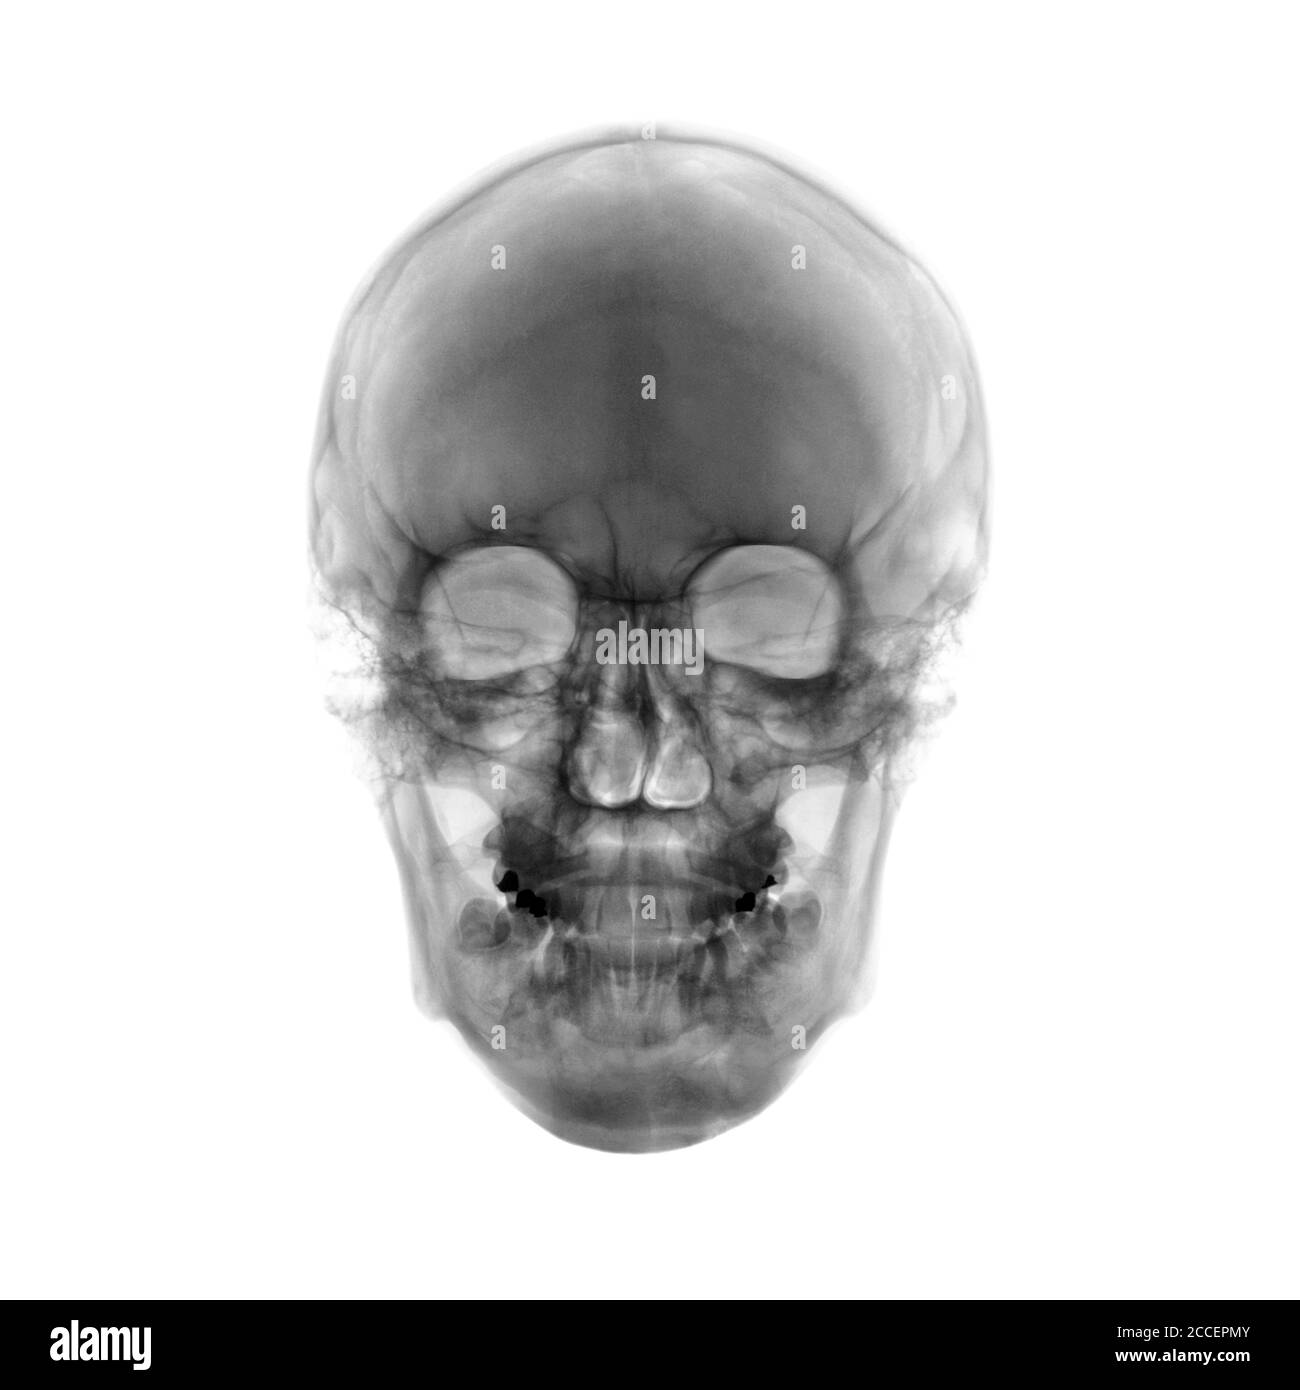 Human skull, X-ray Stock Photo